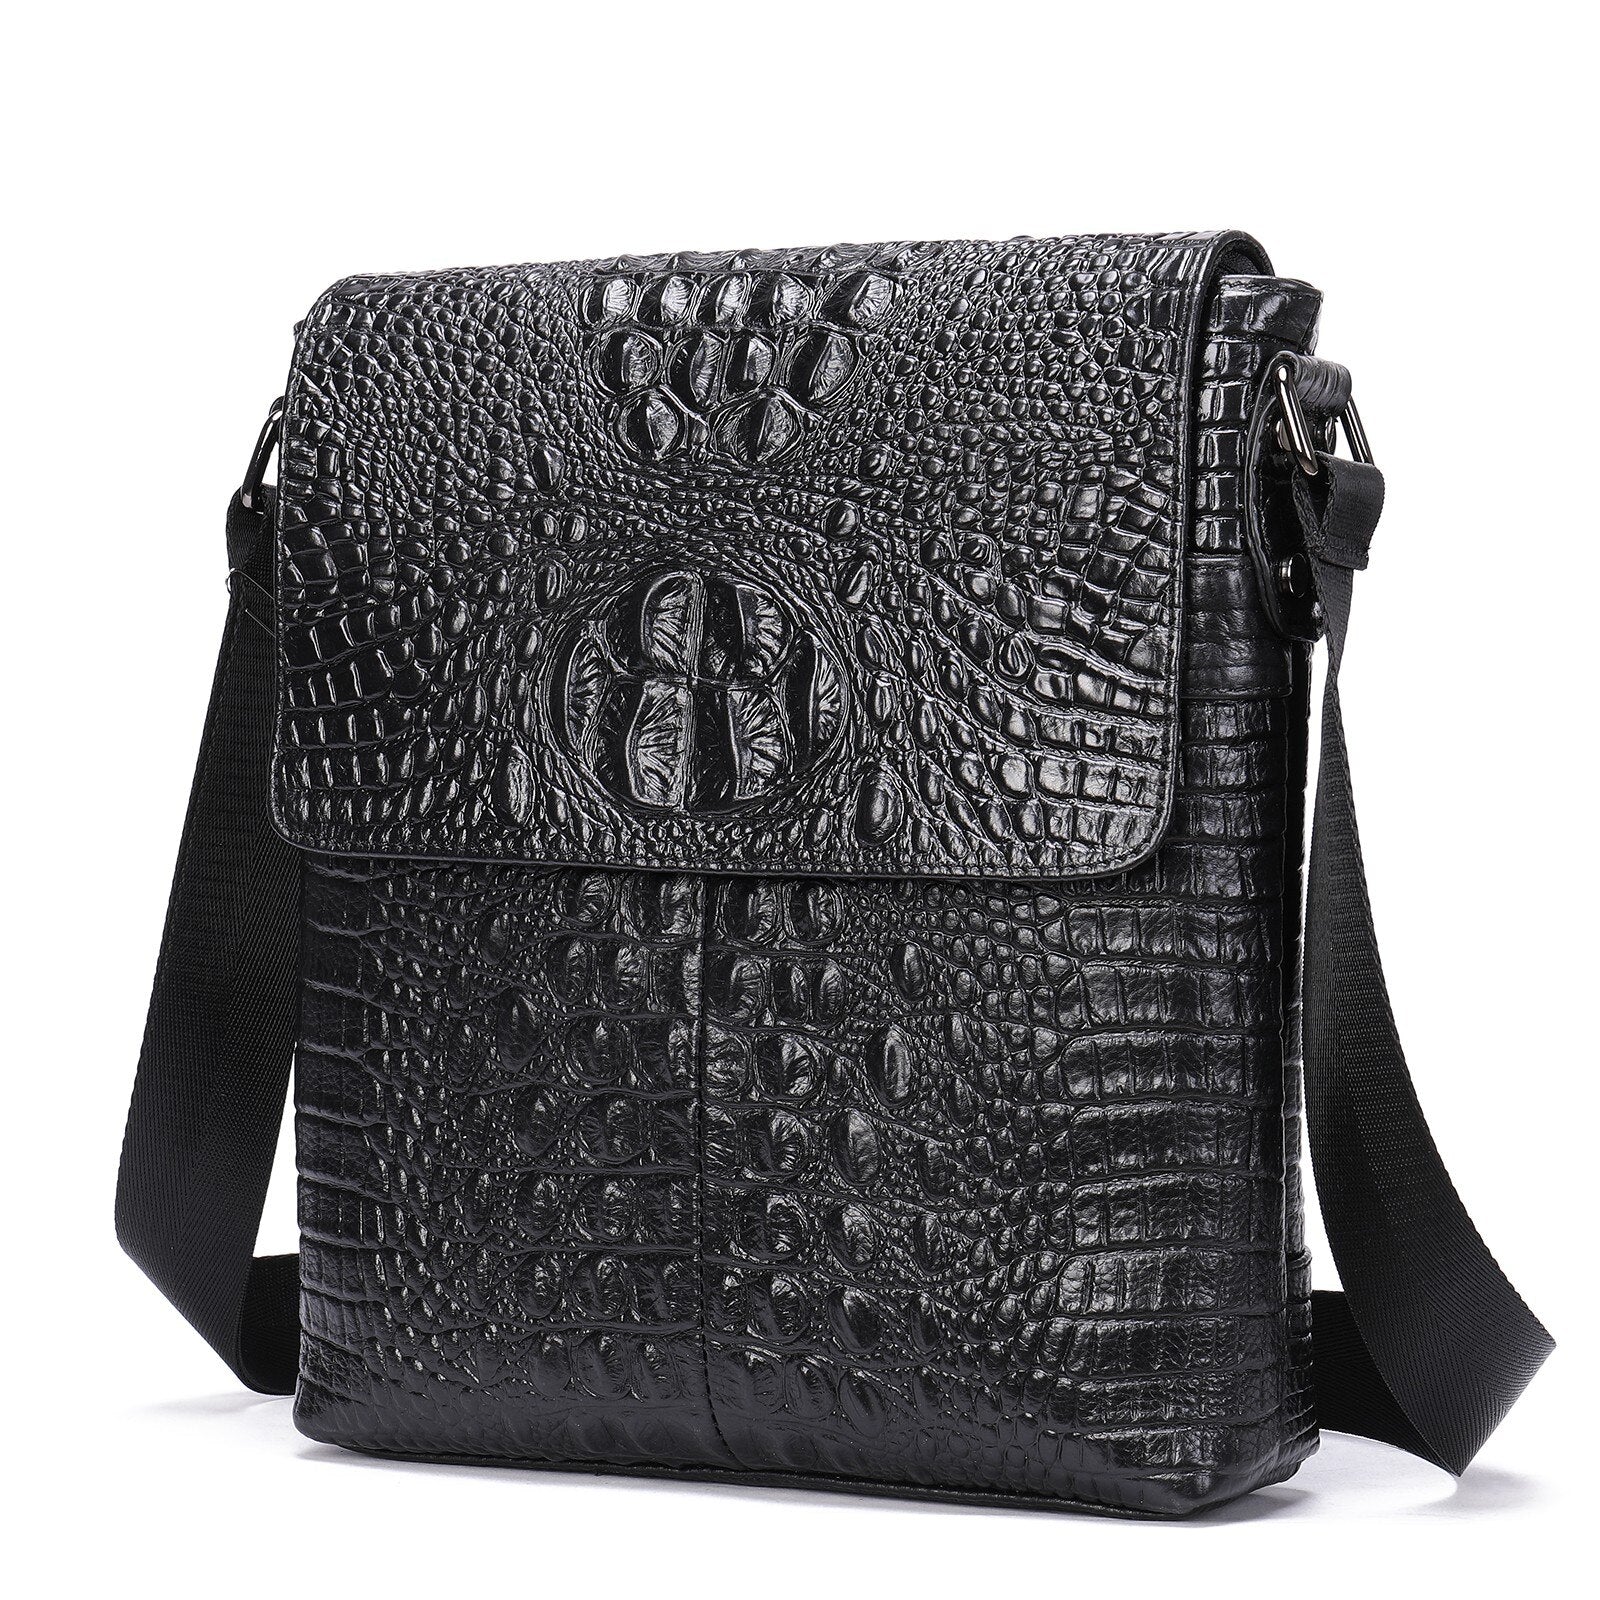 Vintage Genuine Leather Messenger Bag in black pattern 2.